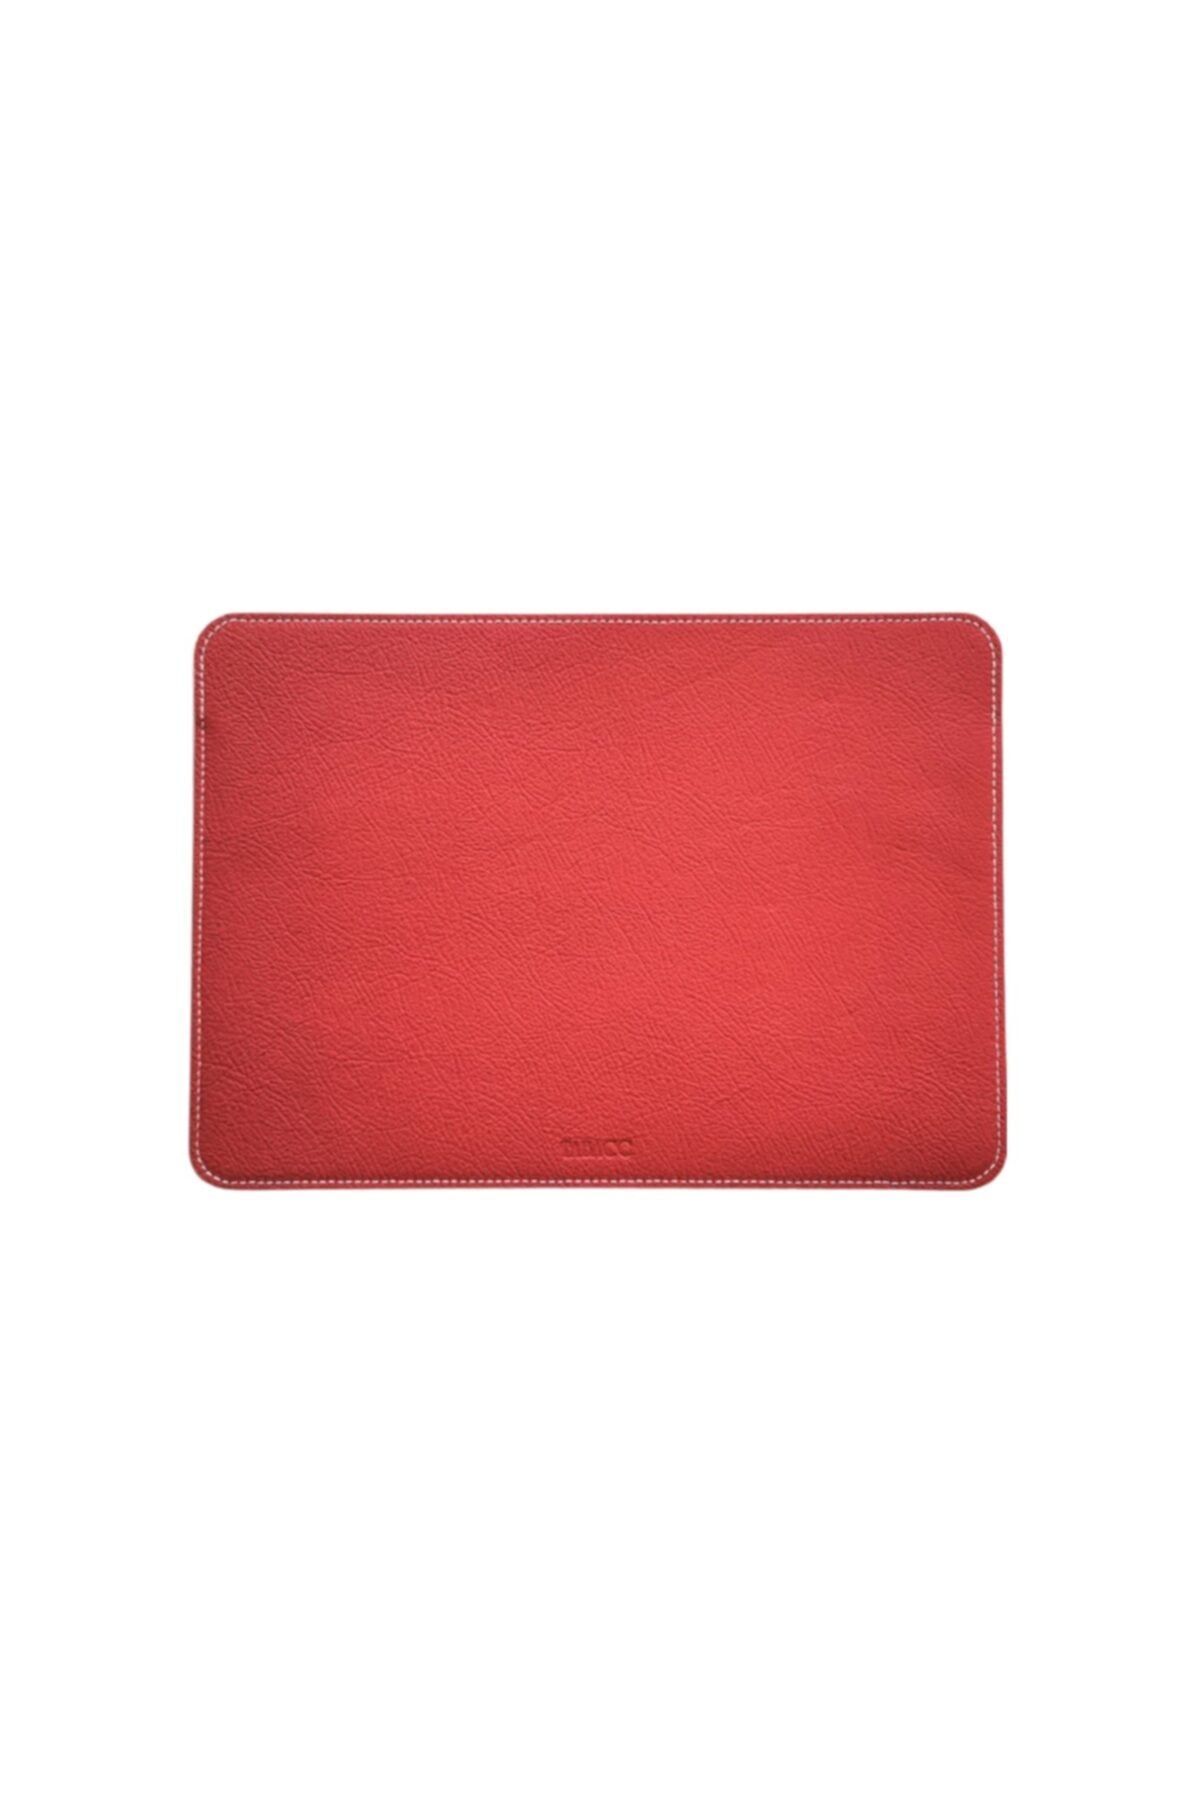 Tabac Deri Bilgisayar Ve Macbook Kılıfı - 15224 - Kırmızı